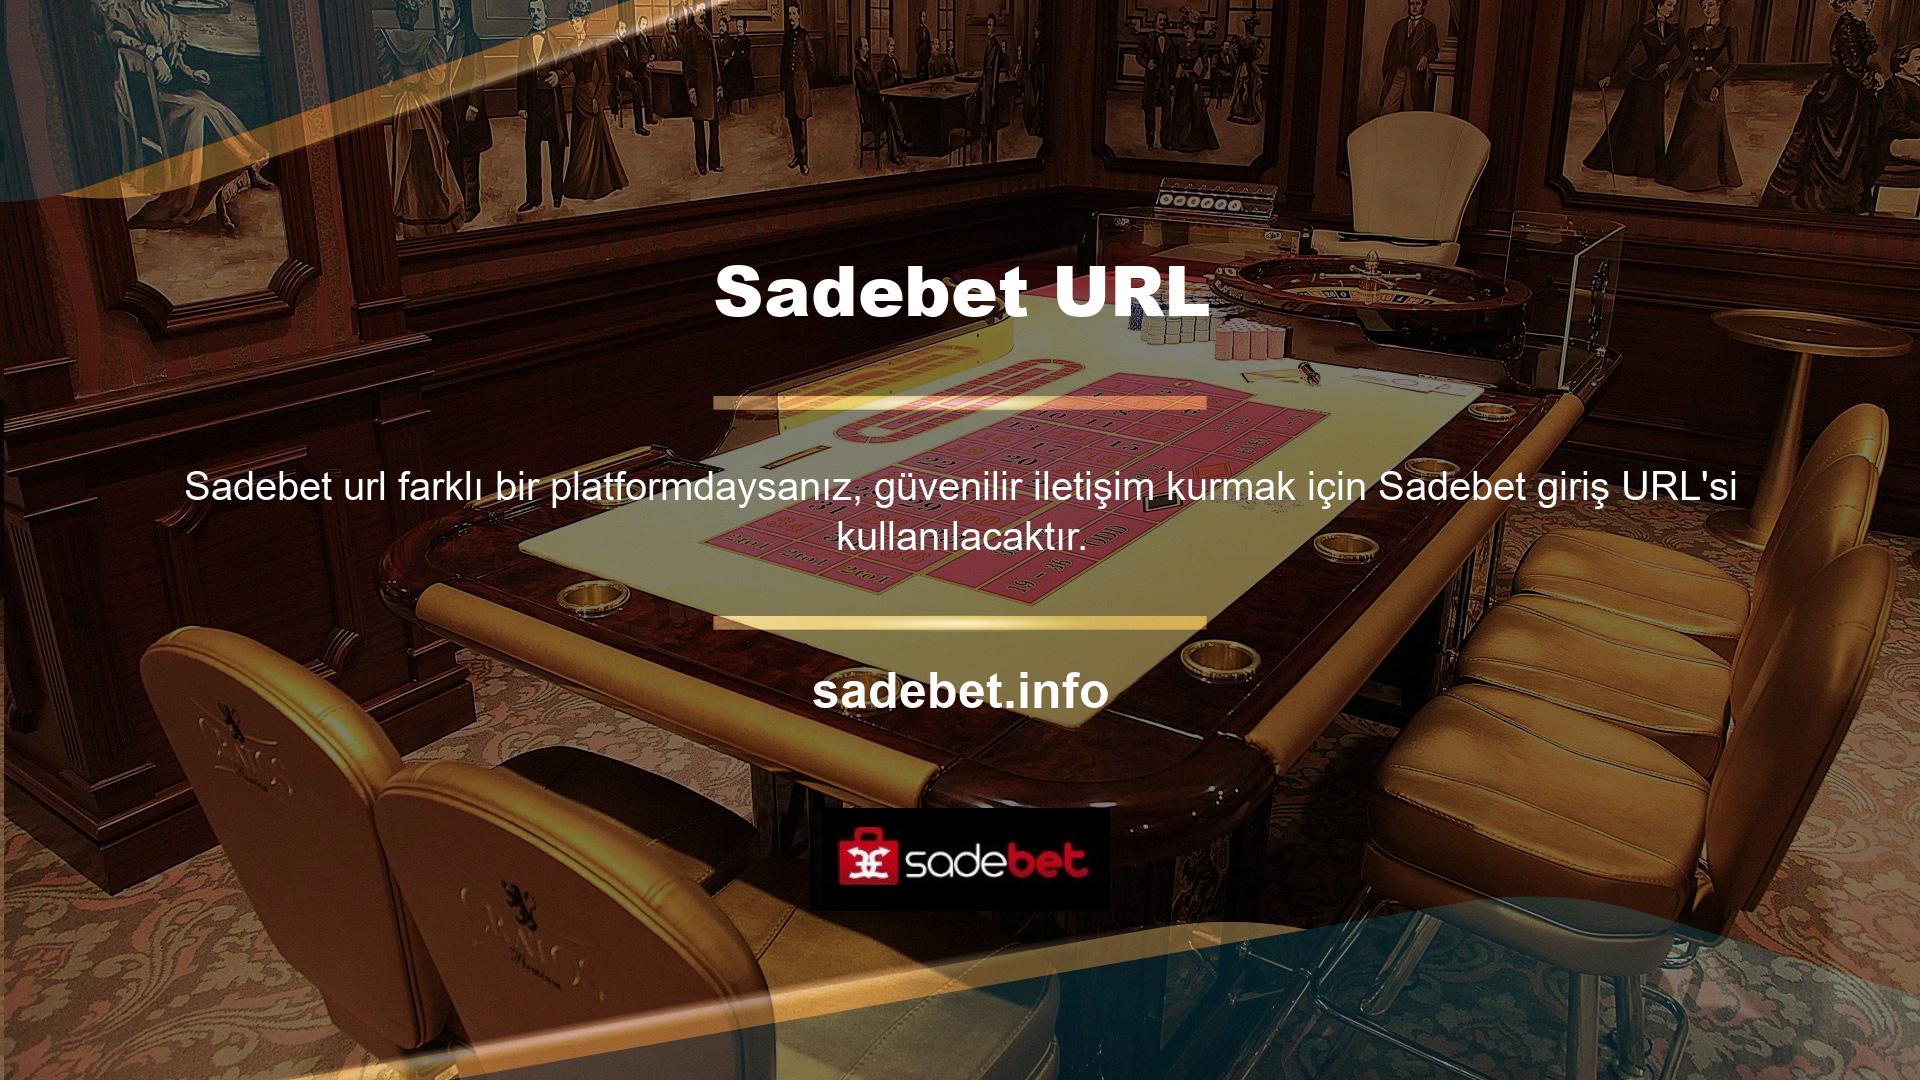 Yabancı Casino siteleri Türkiye'yi takip edecek ve bu da çeşitli kaynaklardan yeni URL'lerin bulunmasına neden olacak